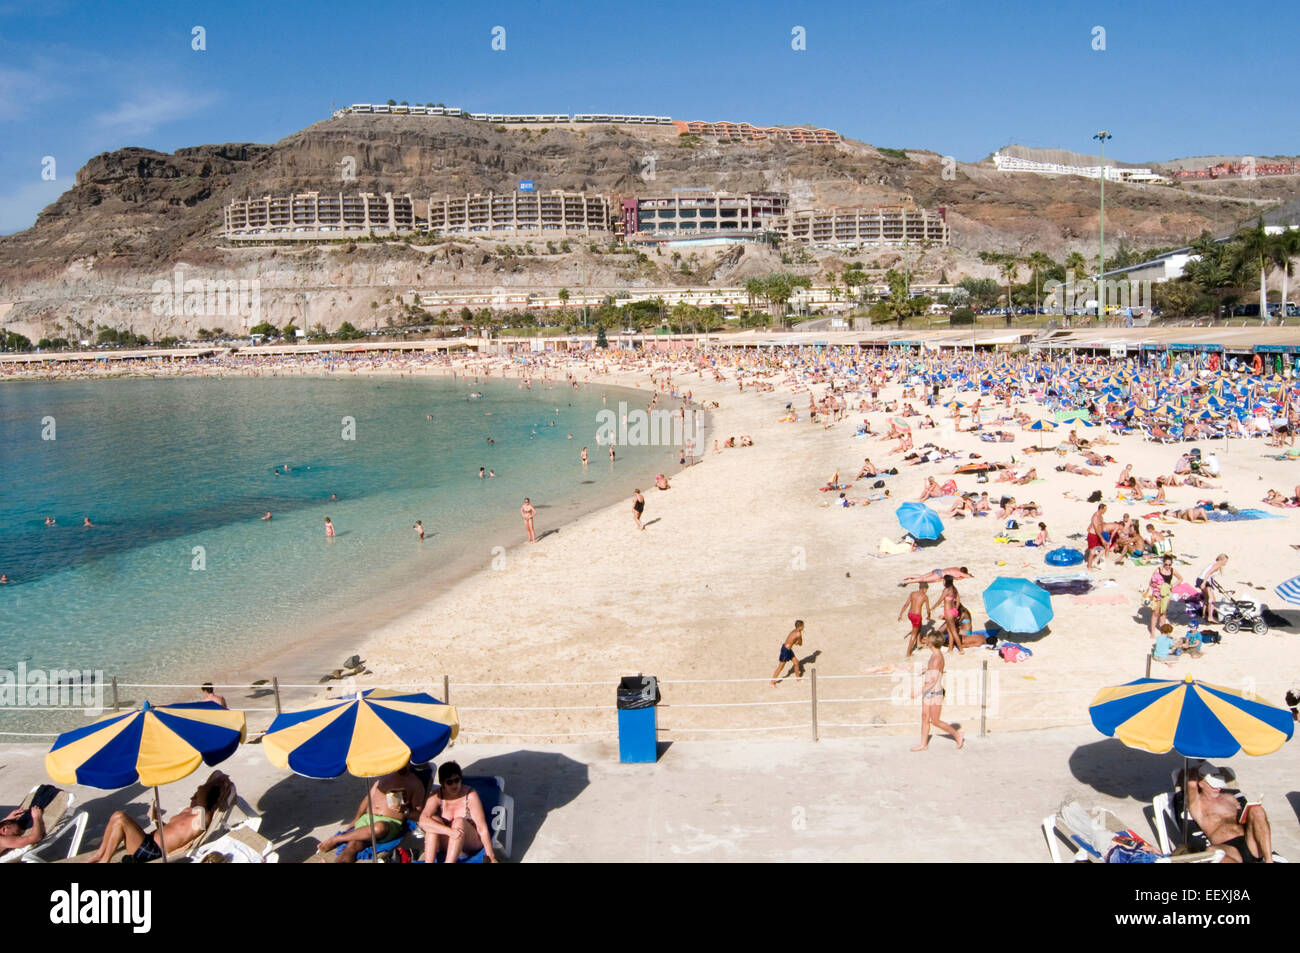 Arguineguín Gran Canaria Gran Canaria le sable blanc des plages de sable de sable des îles canaries canaries Transats Transats Solarium Banque D'Images